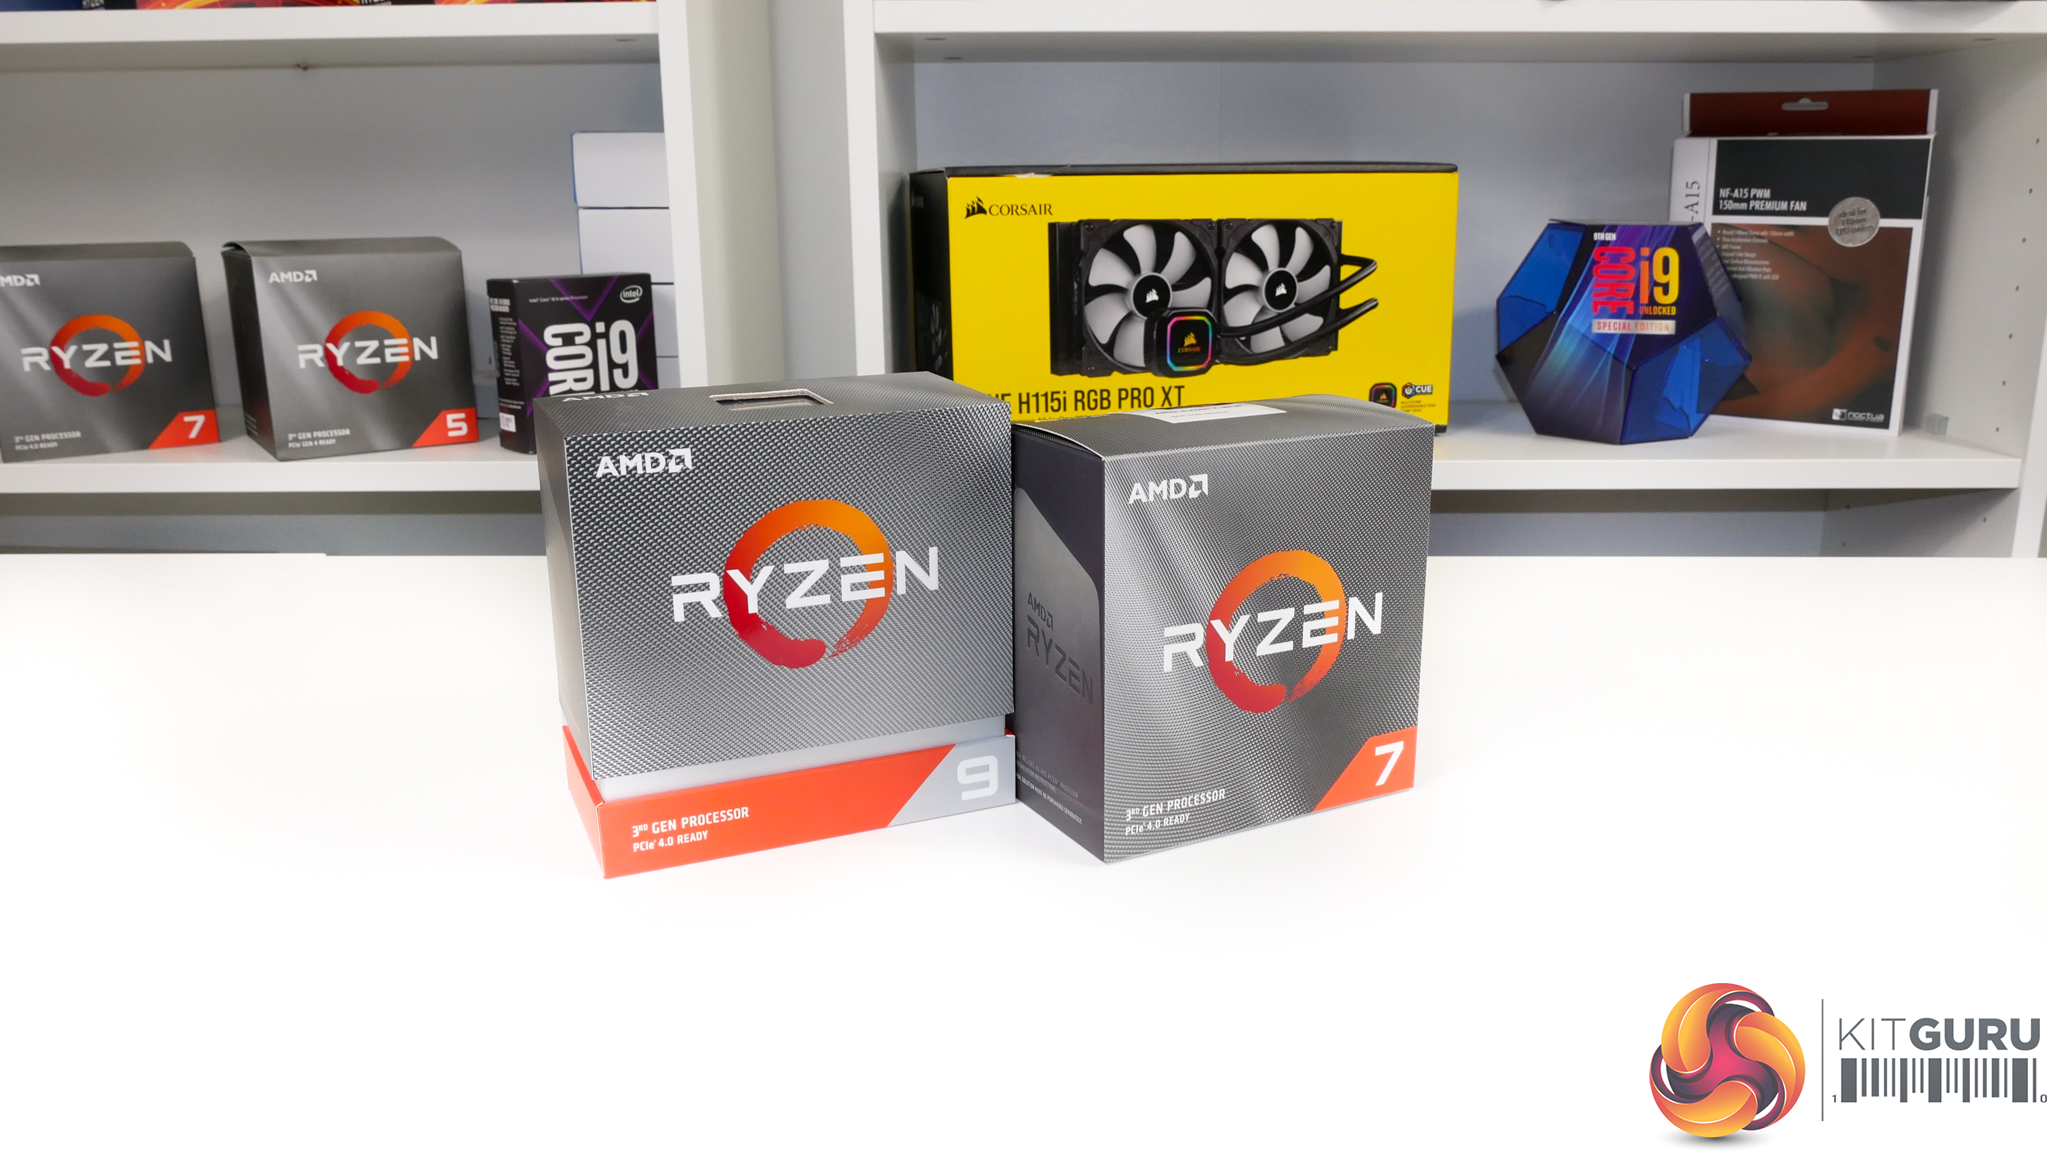 AMD Ryzen 9 3900XT and Ryzen 7 3800XT CPU Review | KitGuru- Part 4